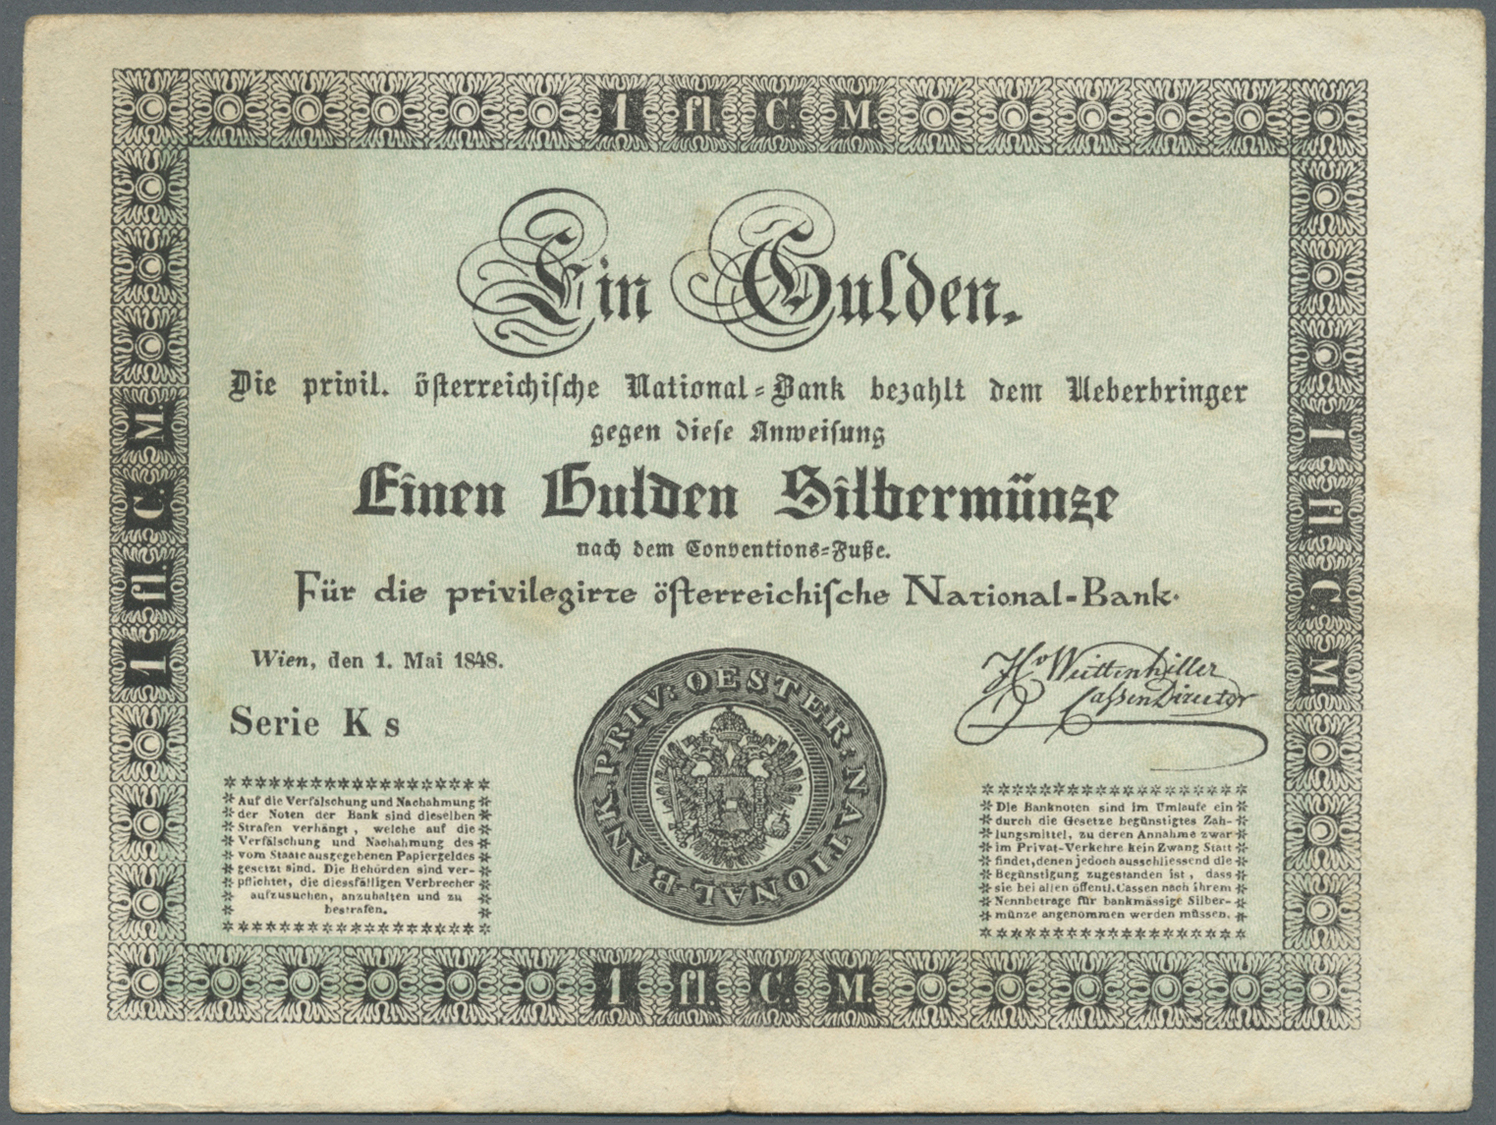 00124 Austria / Österreich: Privilegirte Oesterreichische National-Bank 1 Gulden 1848, P.A79, Great Original Shape With - Austria